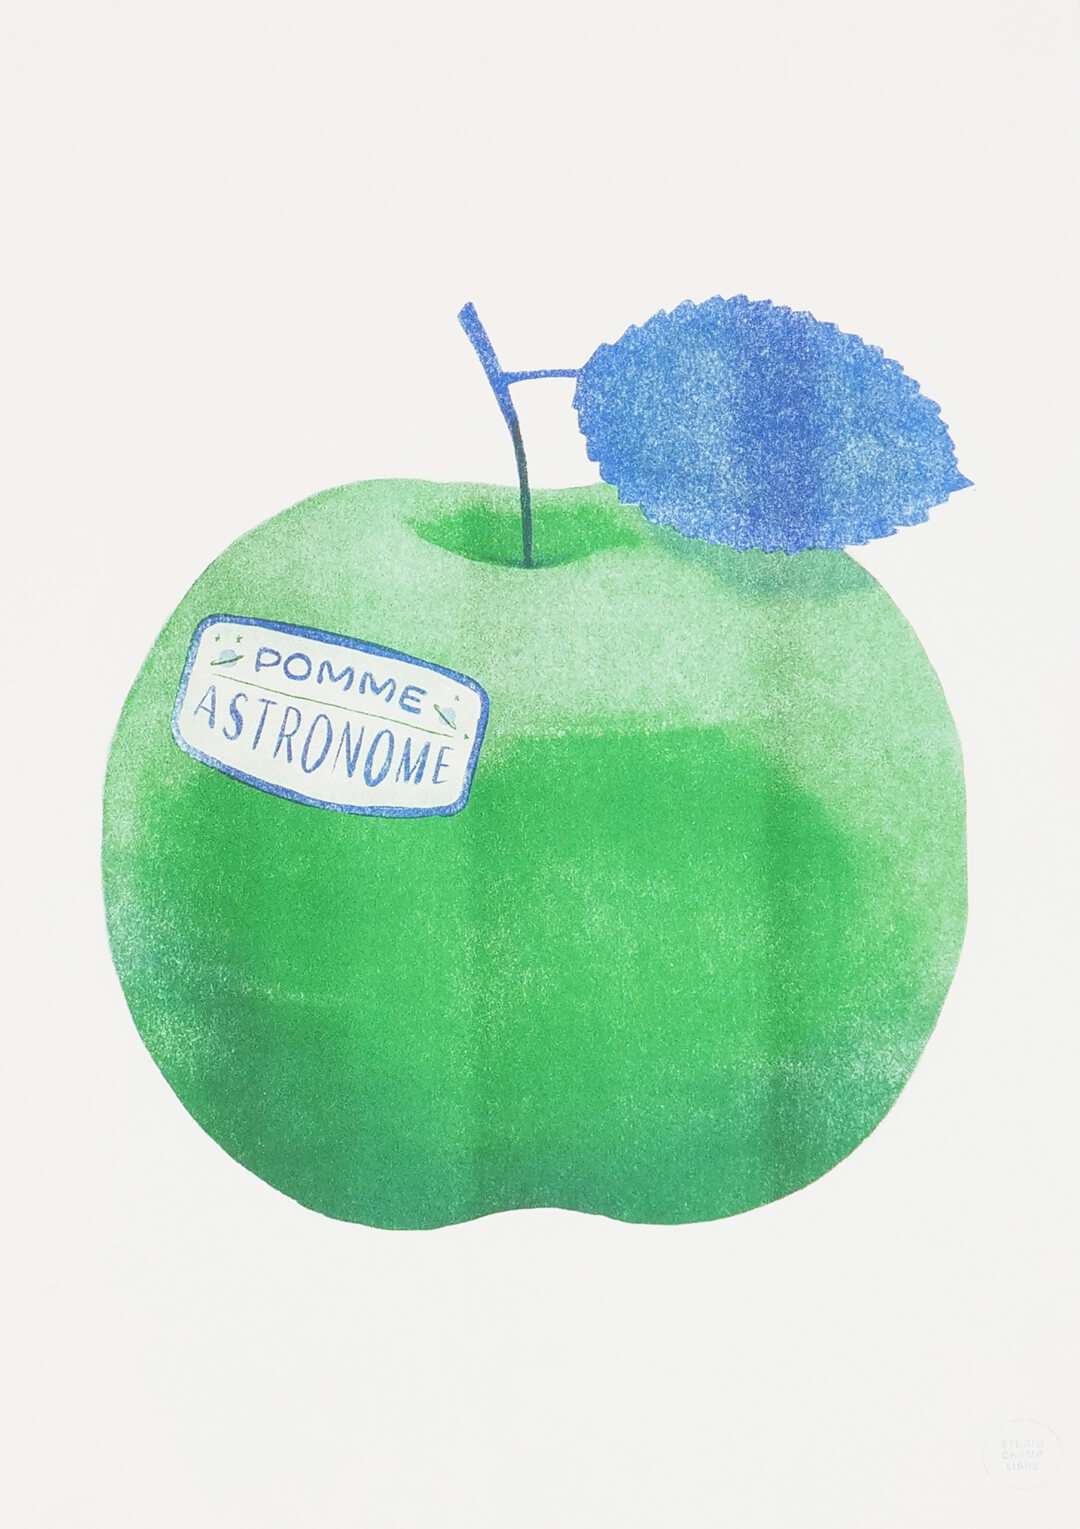 Affiche artisanale de pomme. Illustration originale et décorative